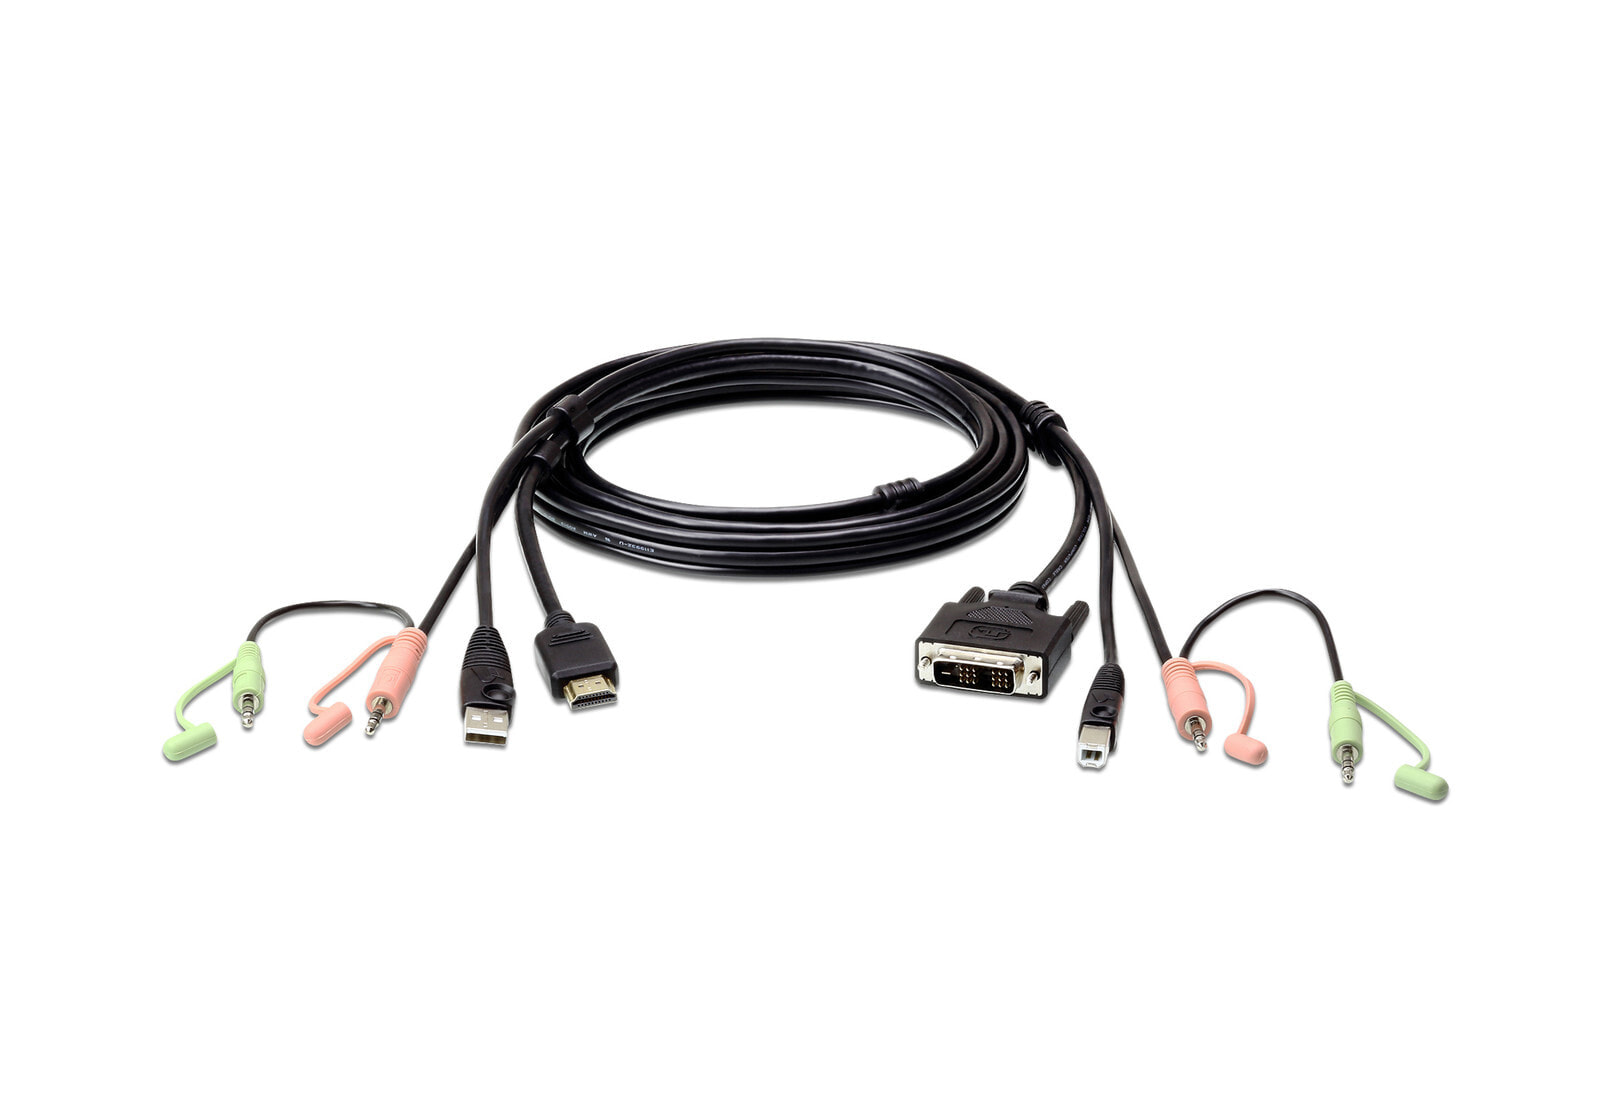 Aten 2L-7D02DH кабельный разъем/переходник HDMI DVI-D Черный